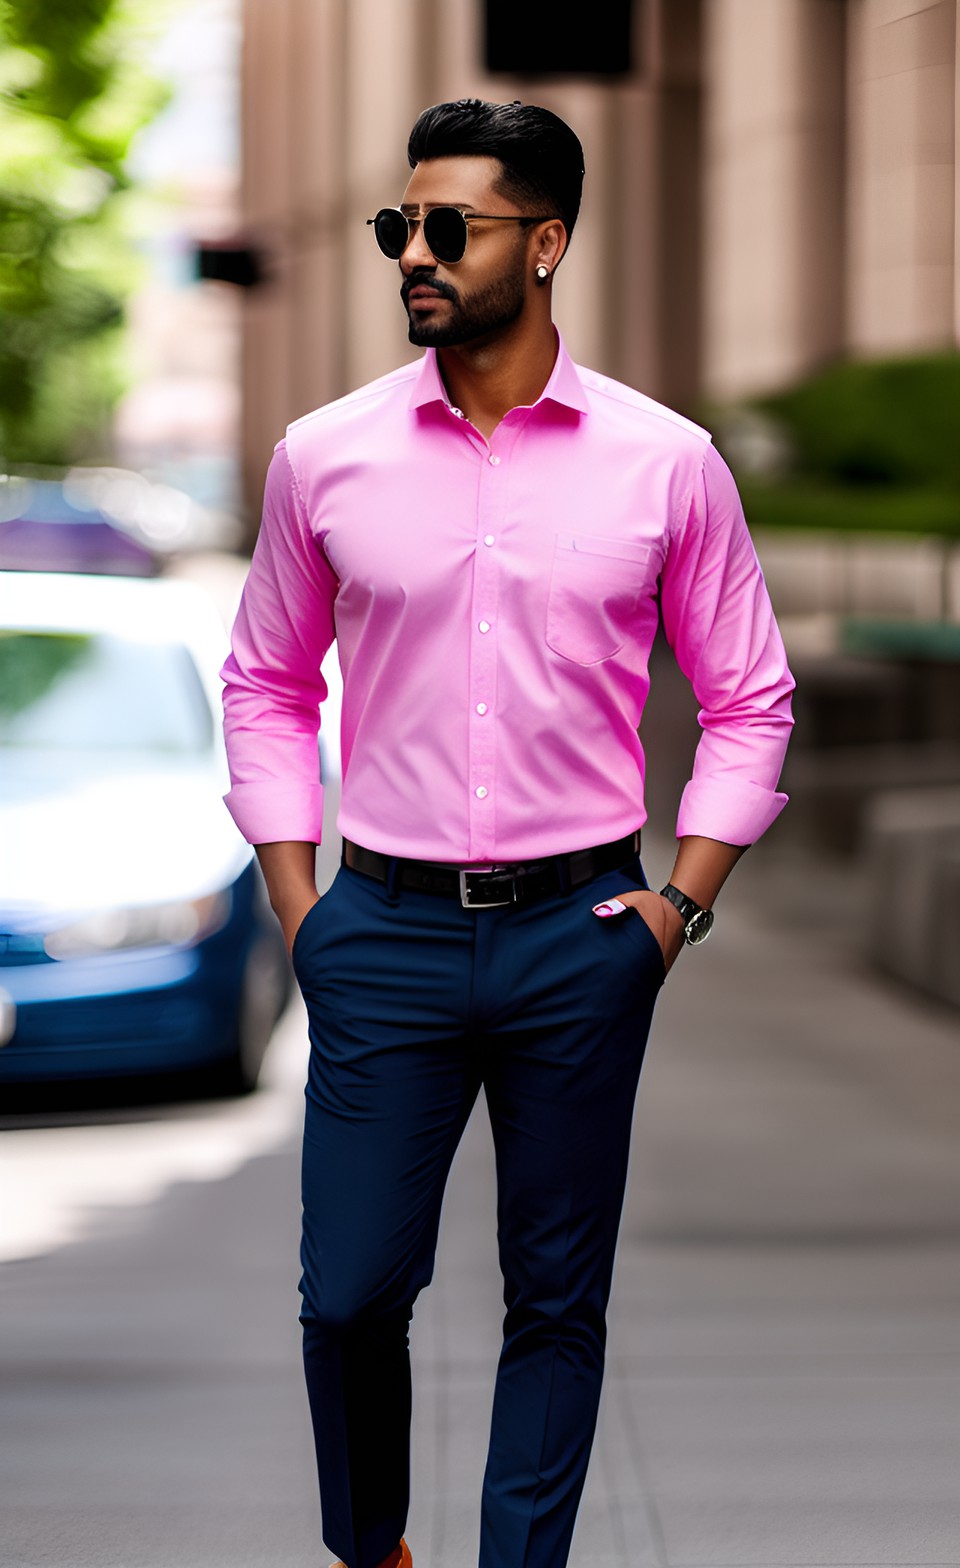 man walking on sidewalk wearing pink shirt with navy blue pants